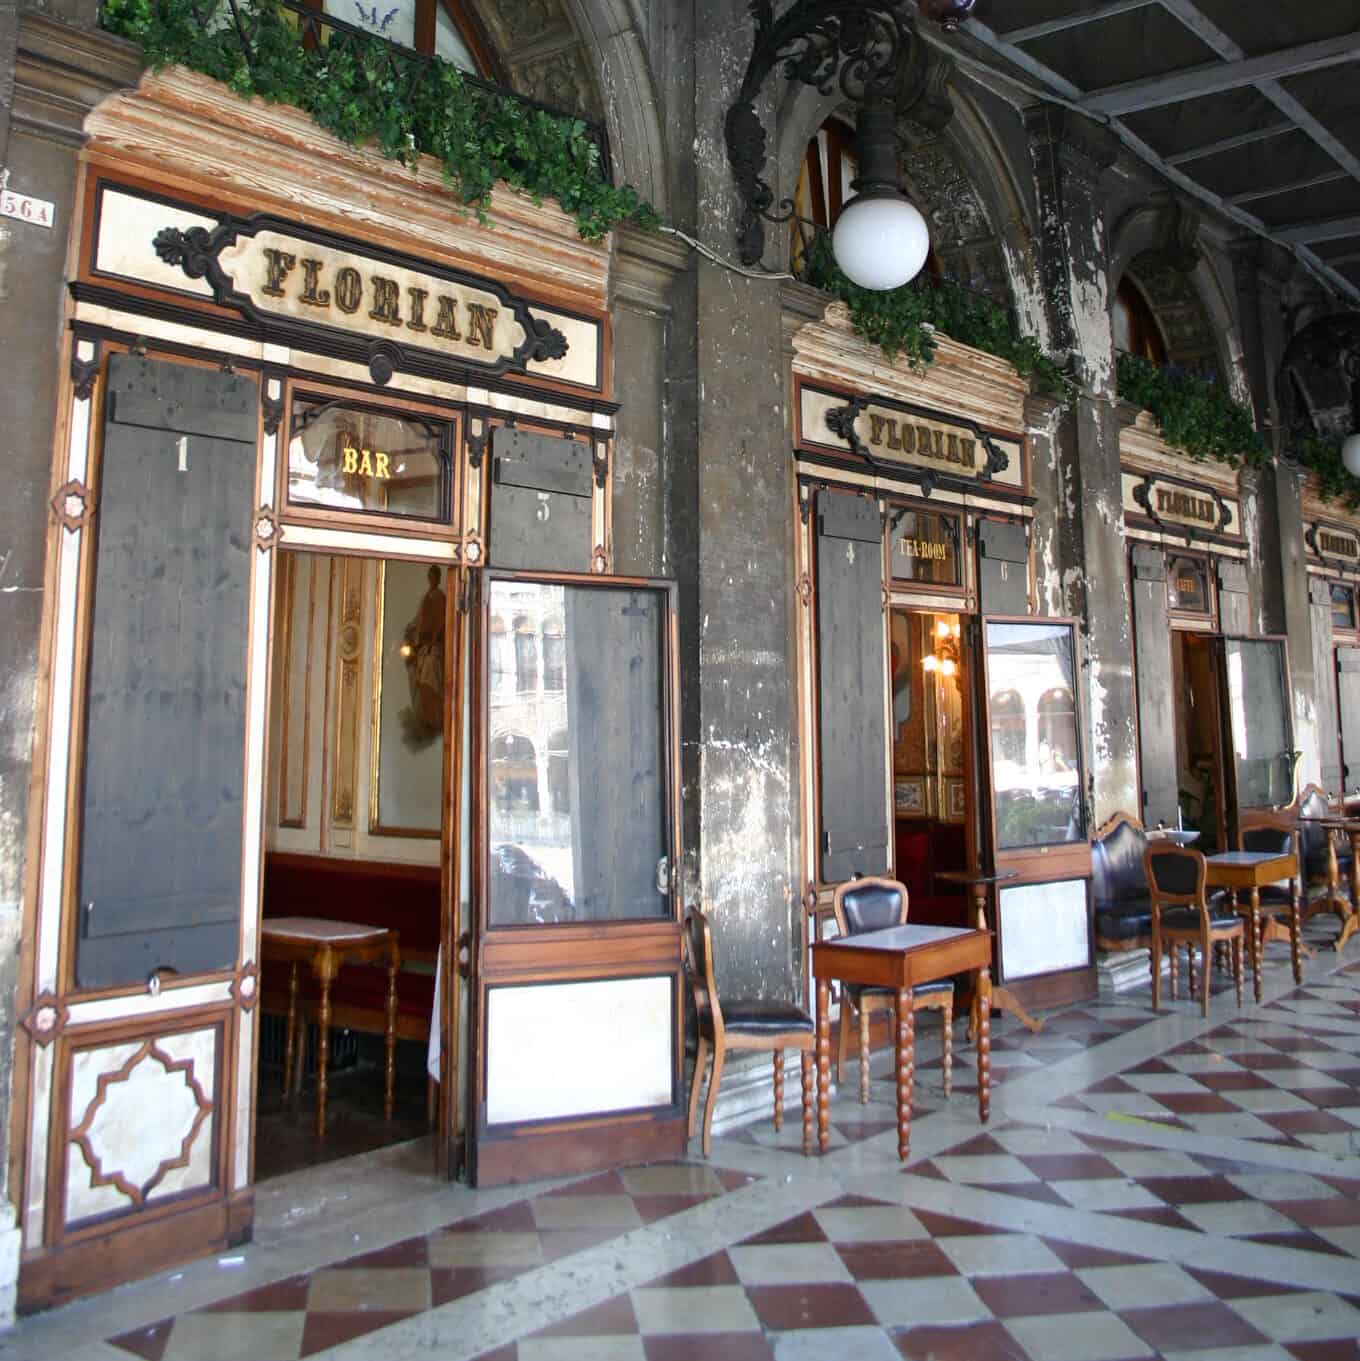 Photo de Giovanni Dall'Orto - Le célèbre Caffè Florian, sur la place Piazza San Marco à Venise, date du XVIIIe siècle et conserve encore son aspect du XIXe siècle (12 août 2007)